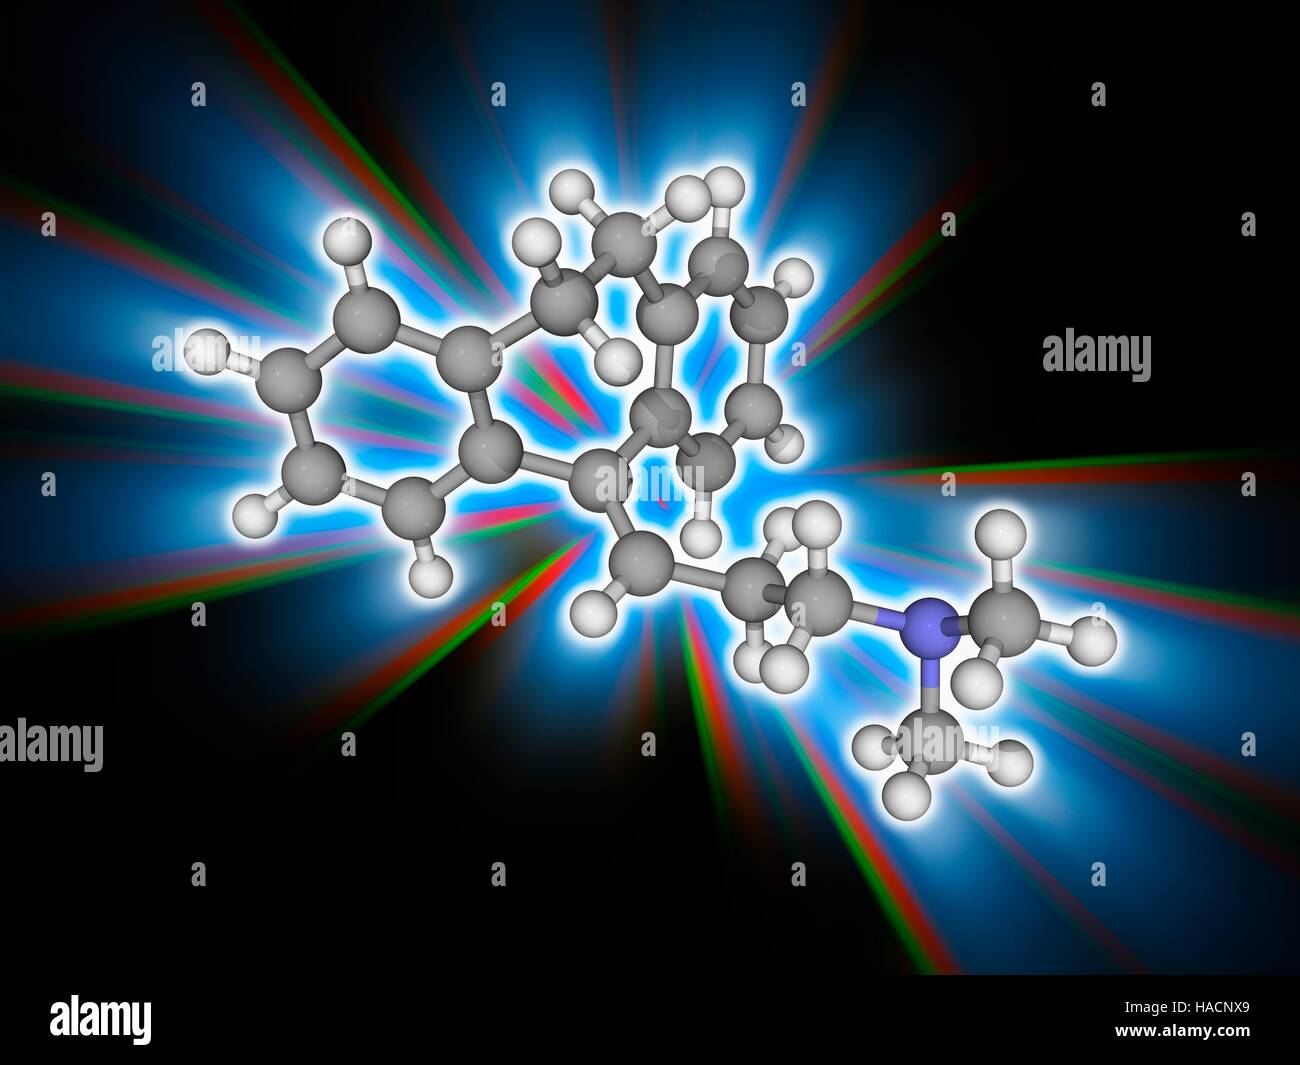 L'amitriptyline. Le modèle moléculaire de l'antidépresseur amitriptyline (C20.H23.N). Ce médicament est également utilisé pour traiter un large éventail de troubles de santé mentale. Les atomes sont représentés comme des sphères et sont codés par couleur : carbone (gris), l'hydrogène (blanc) et de l'azote (bleu). L'illustration. Banque D'Images